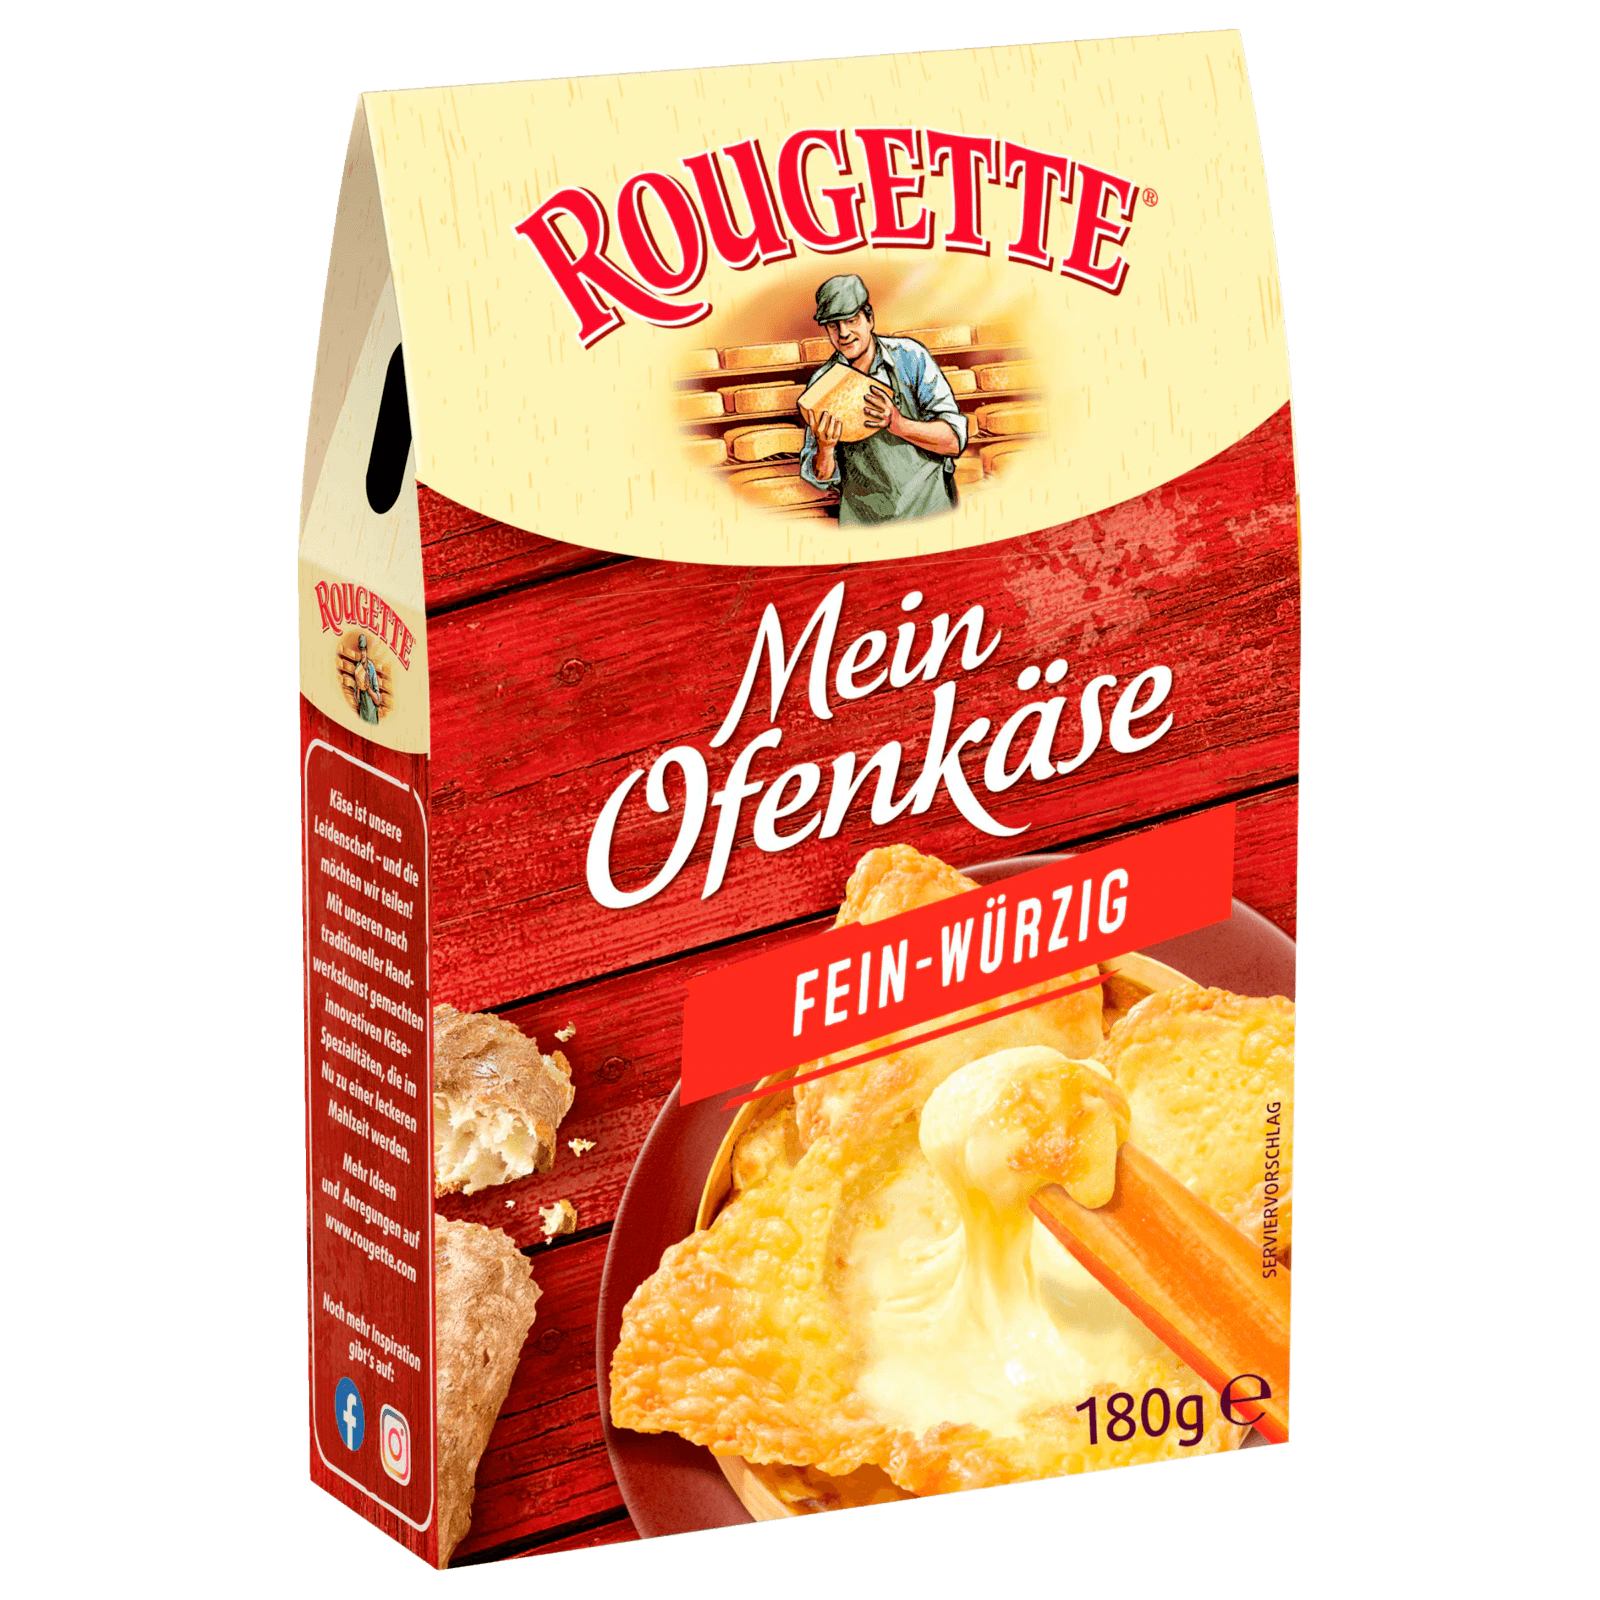 Rougette Der kleine 180g online fein-würzig bei bestellen! Ofenkäse REWE